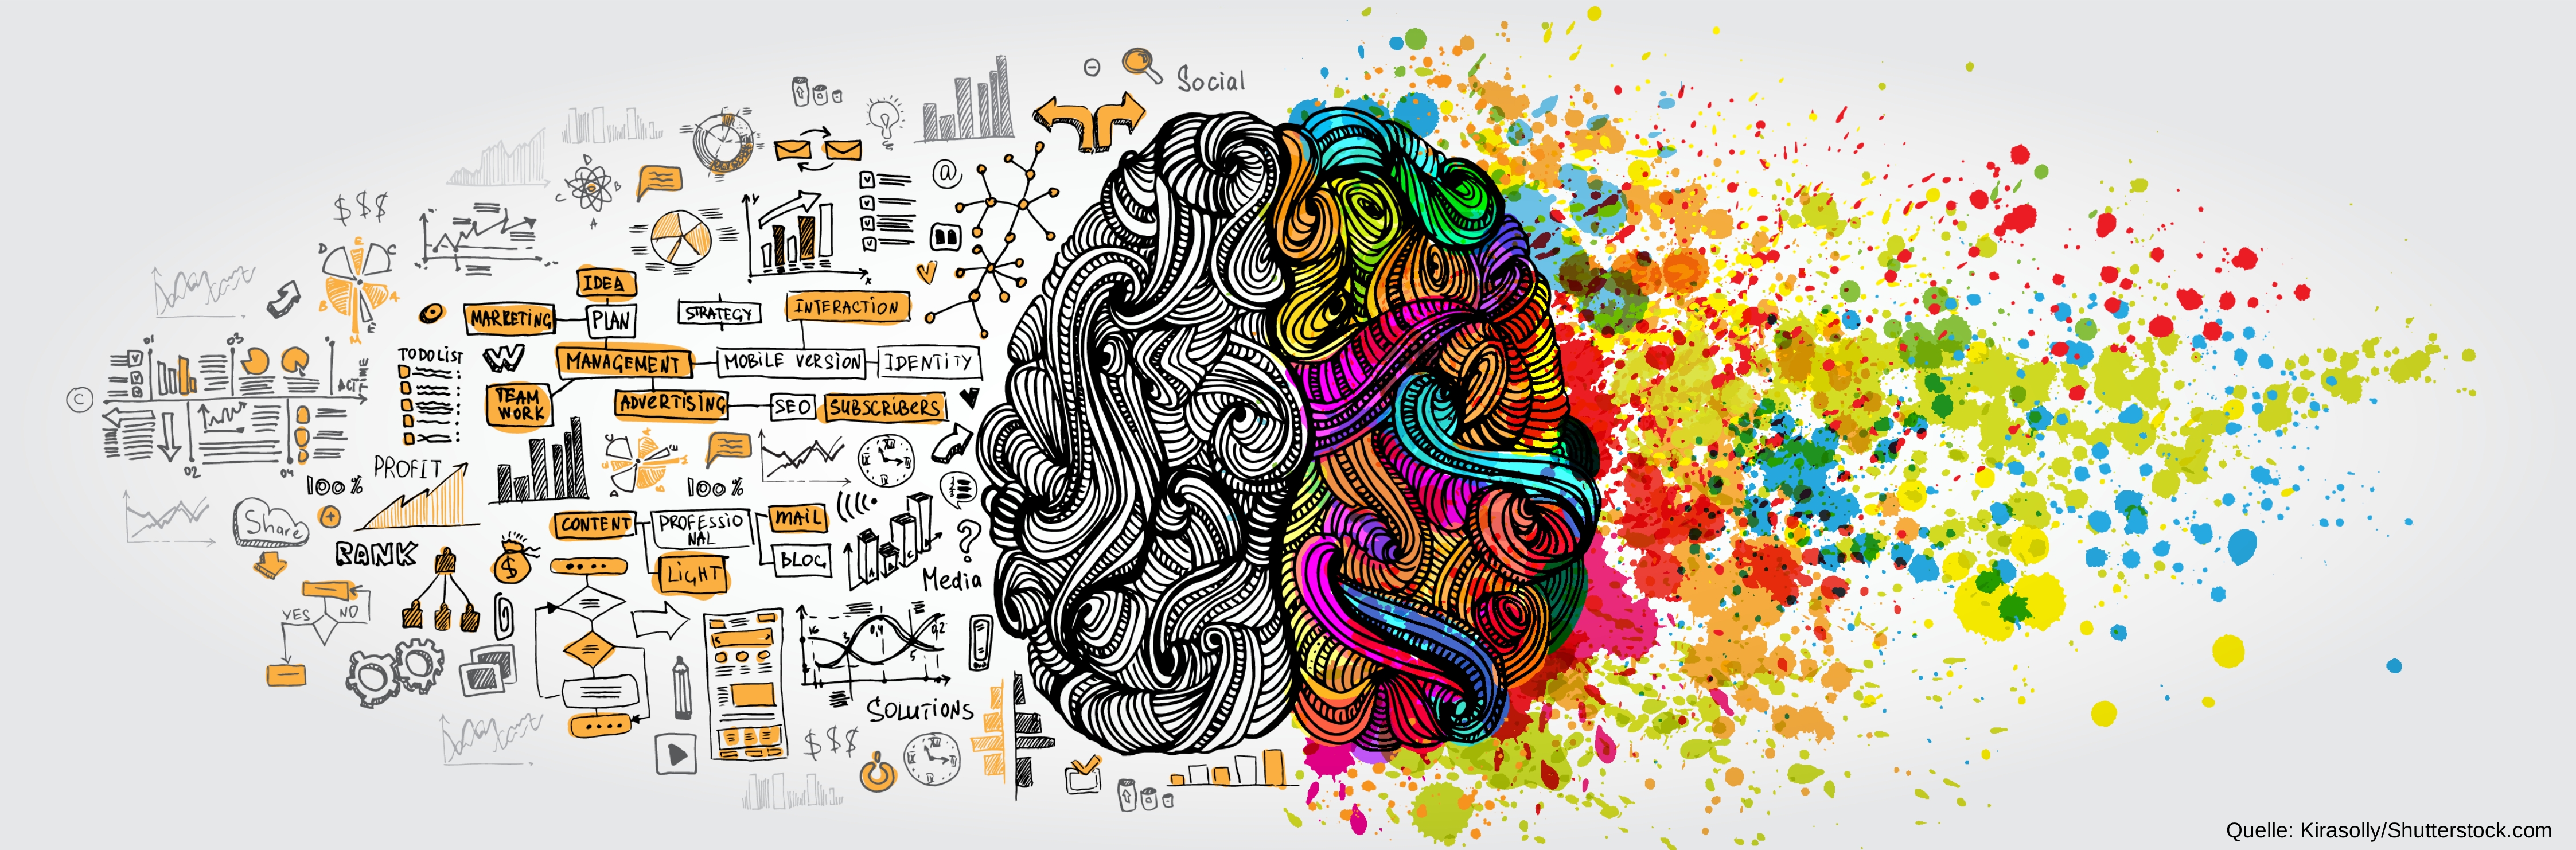 Künstlerische Darstellung des Gehirn, von oben gesehen, kombiniert mit bunten Farben sowie Symbolen und Begriffen der Gegenwart. Herkunft des Bildes: Kirasolly/Shutterstock.com